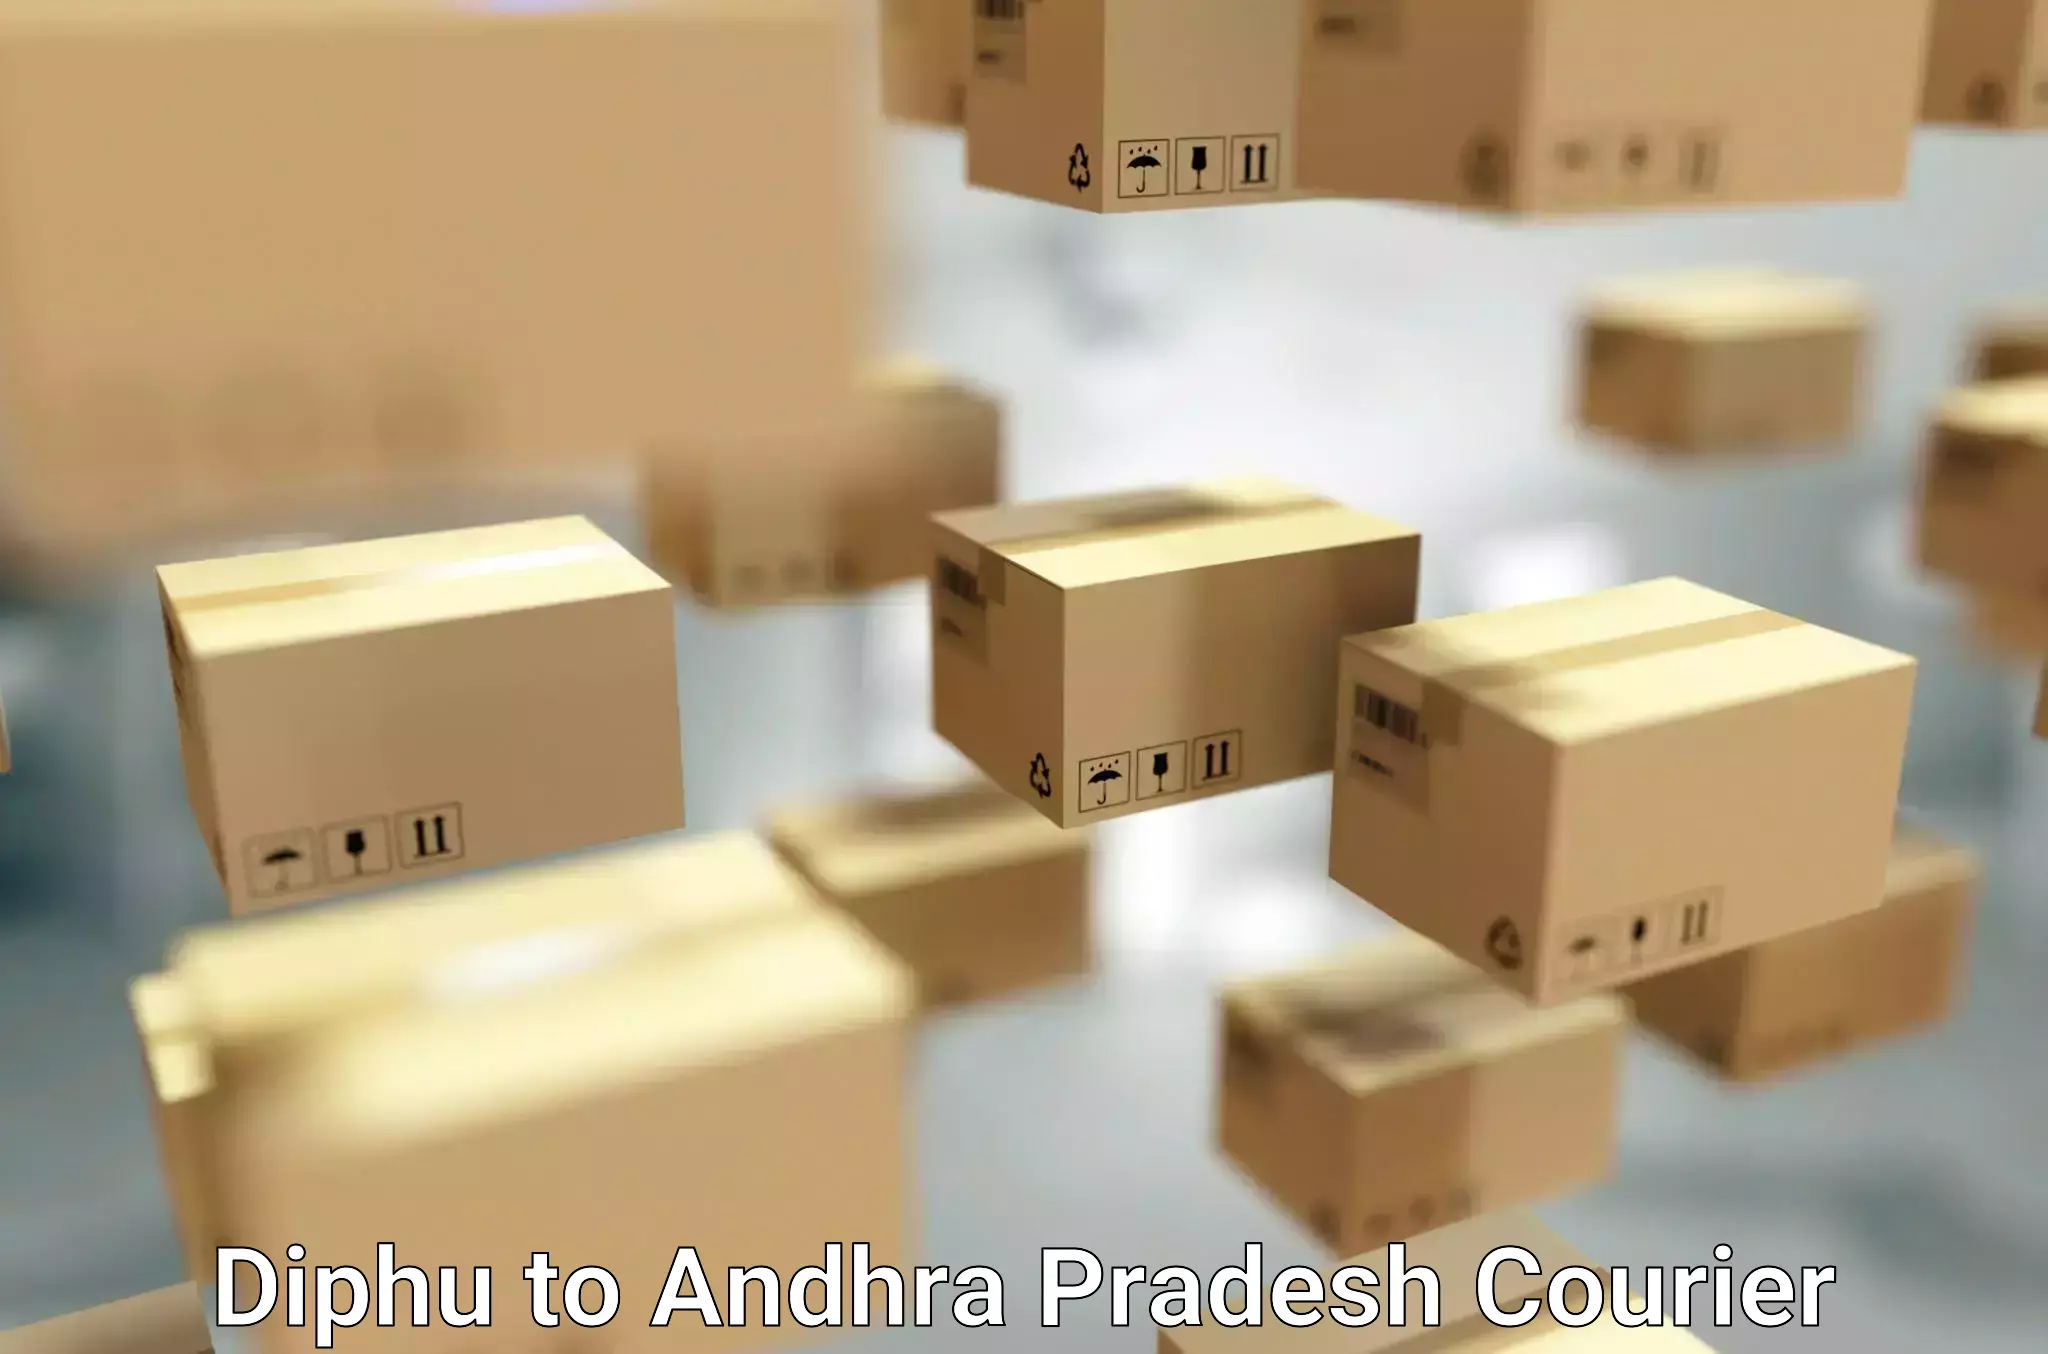 Furniture transport and storage in Diphu to Andhra Pradesh